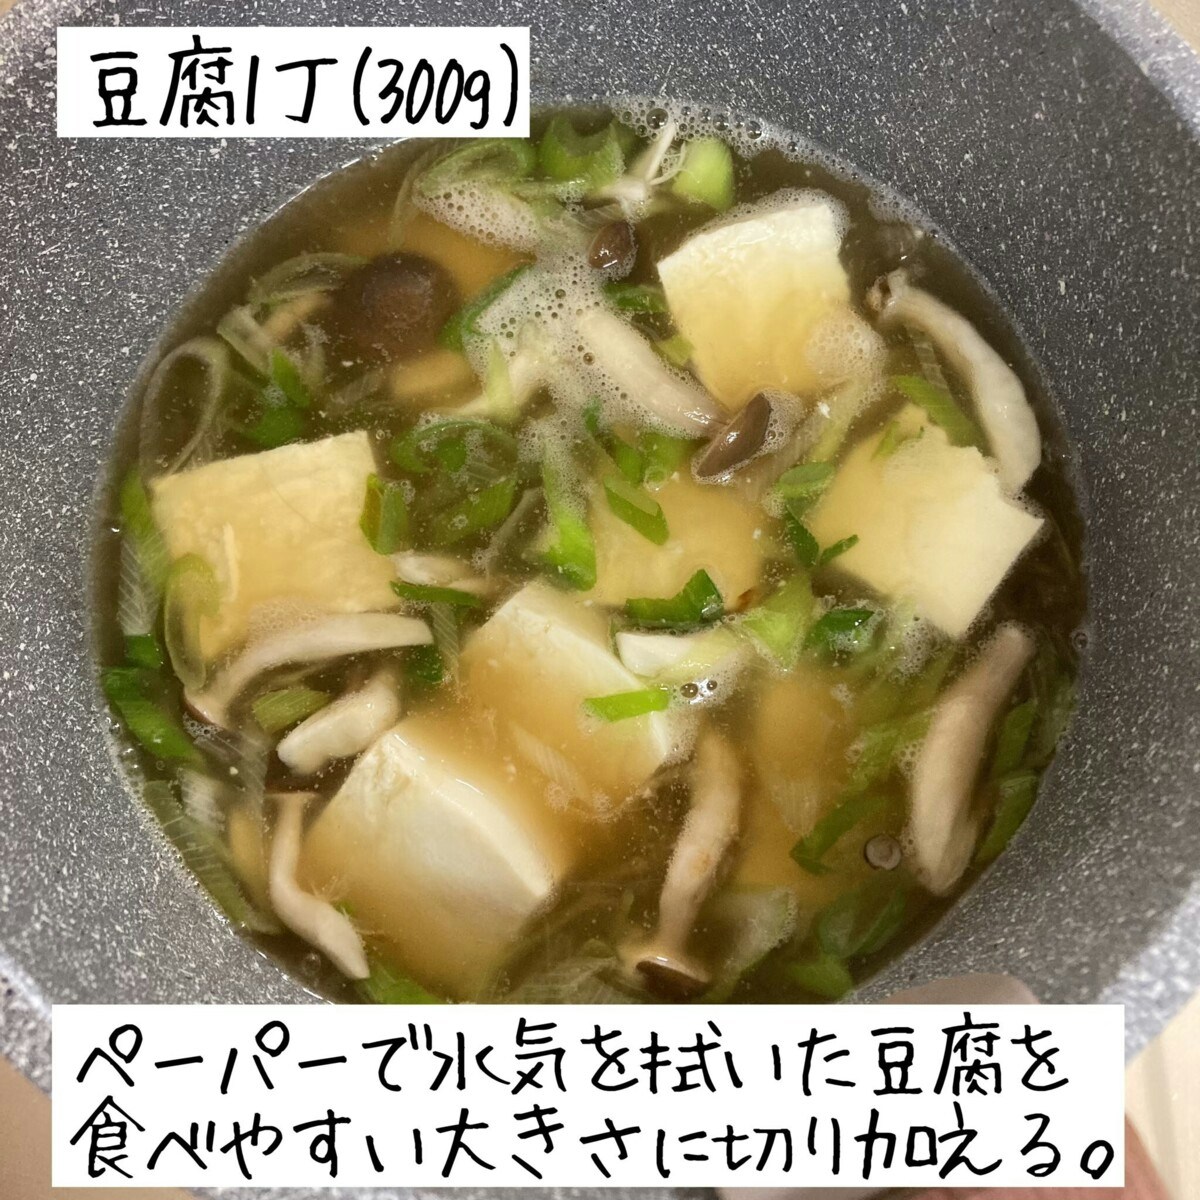 あんかけ豆腐のレシピです。